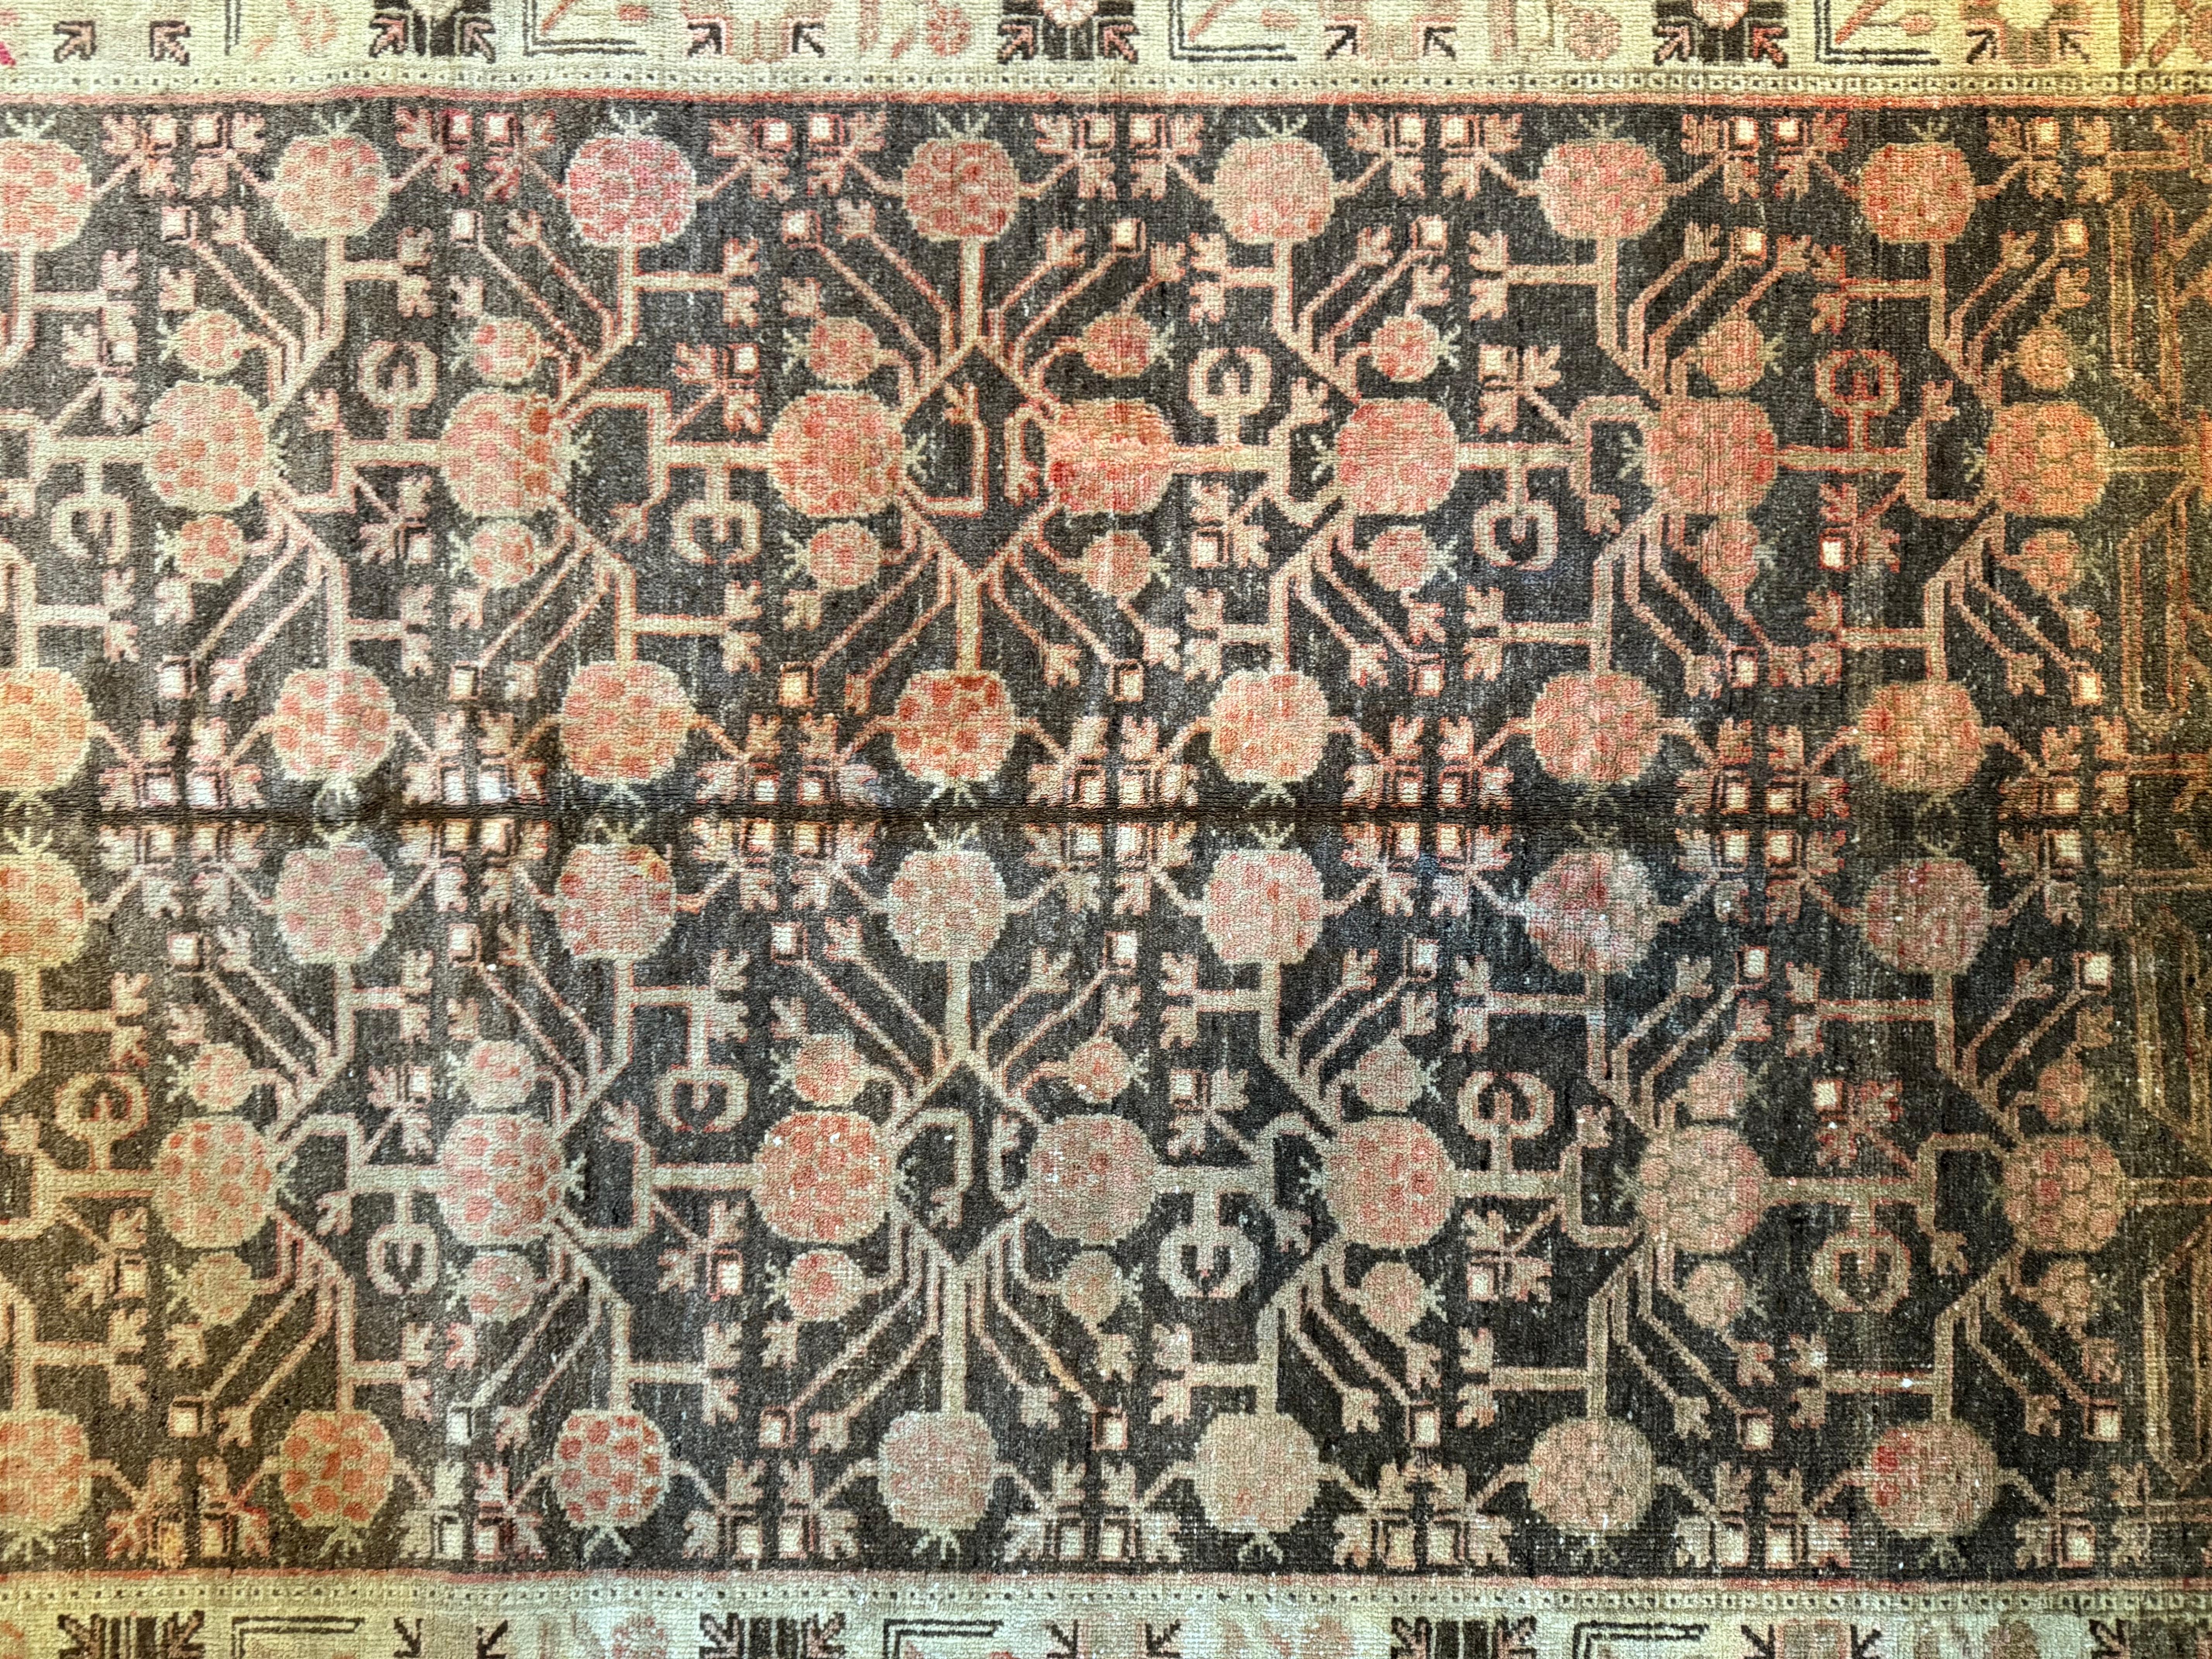 Umarmen Sie zeitlose Eleganz mit diesem antiken Samarkand-Teppich aus dem 19. Jahrhundert in der Größe von 6,6' x 4,6'. Die filigranen Muster und warmen Farbtöne verleihen jedem amerikanischen Haus einen Hauch von Vintage-Charme und verbinden